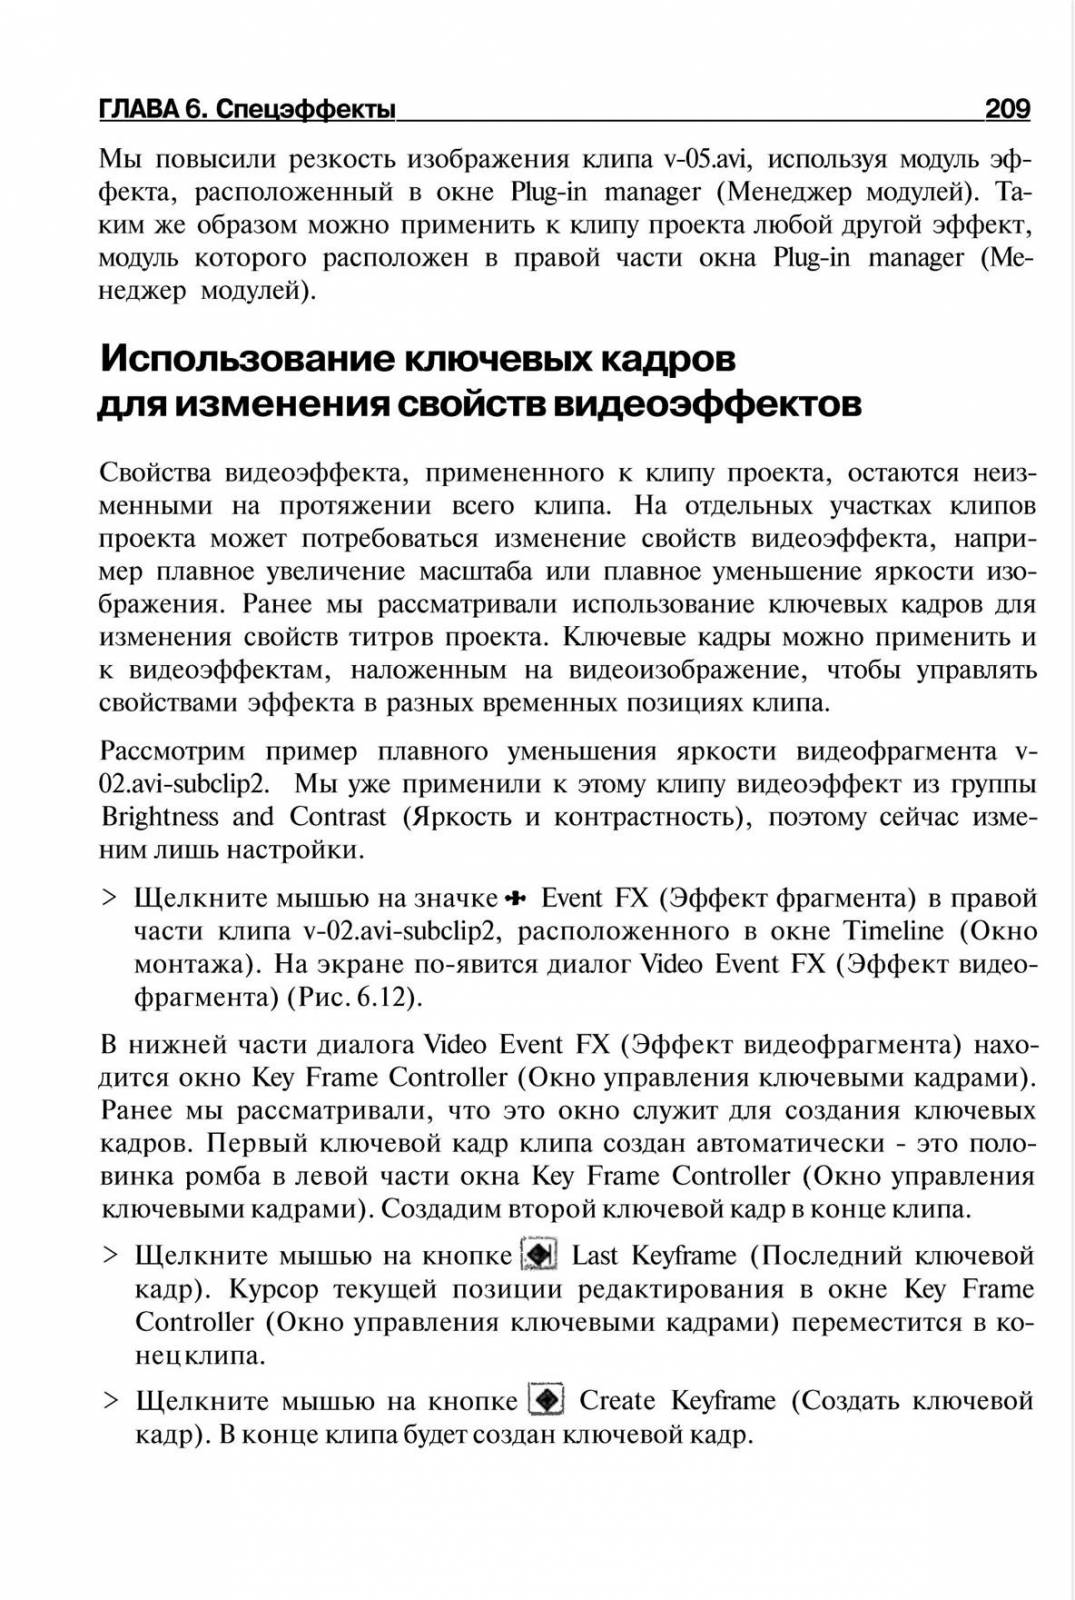 http://redaktori-uroki.3dn.ru/_ph/14/816729871.jpg